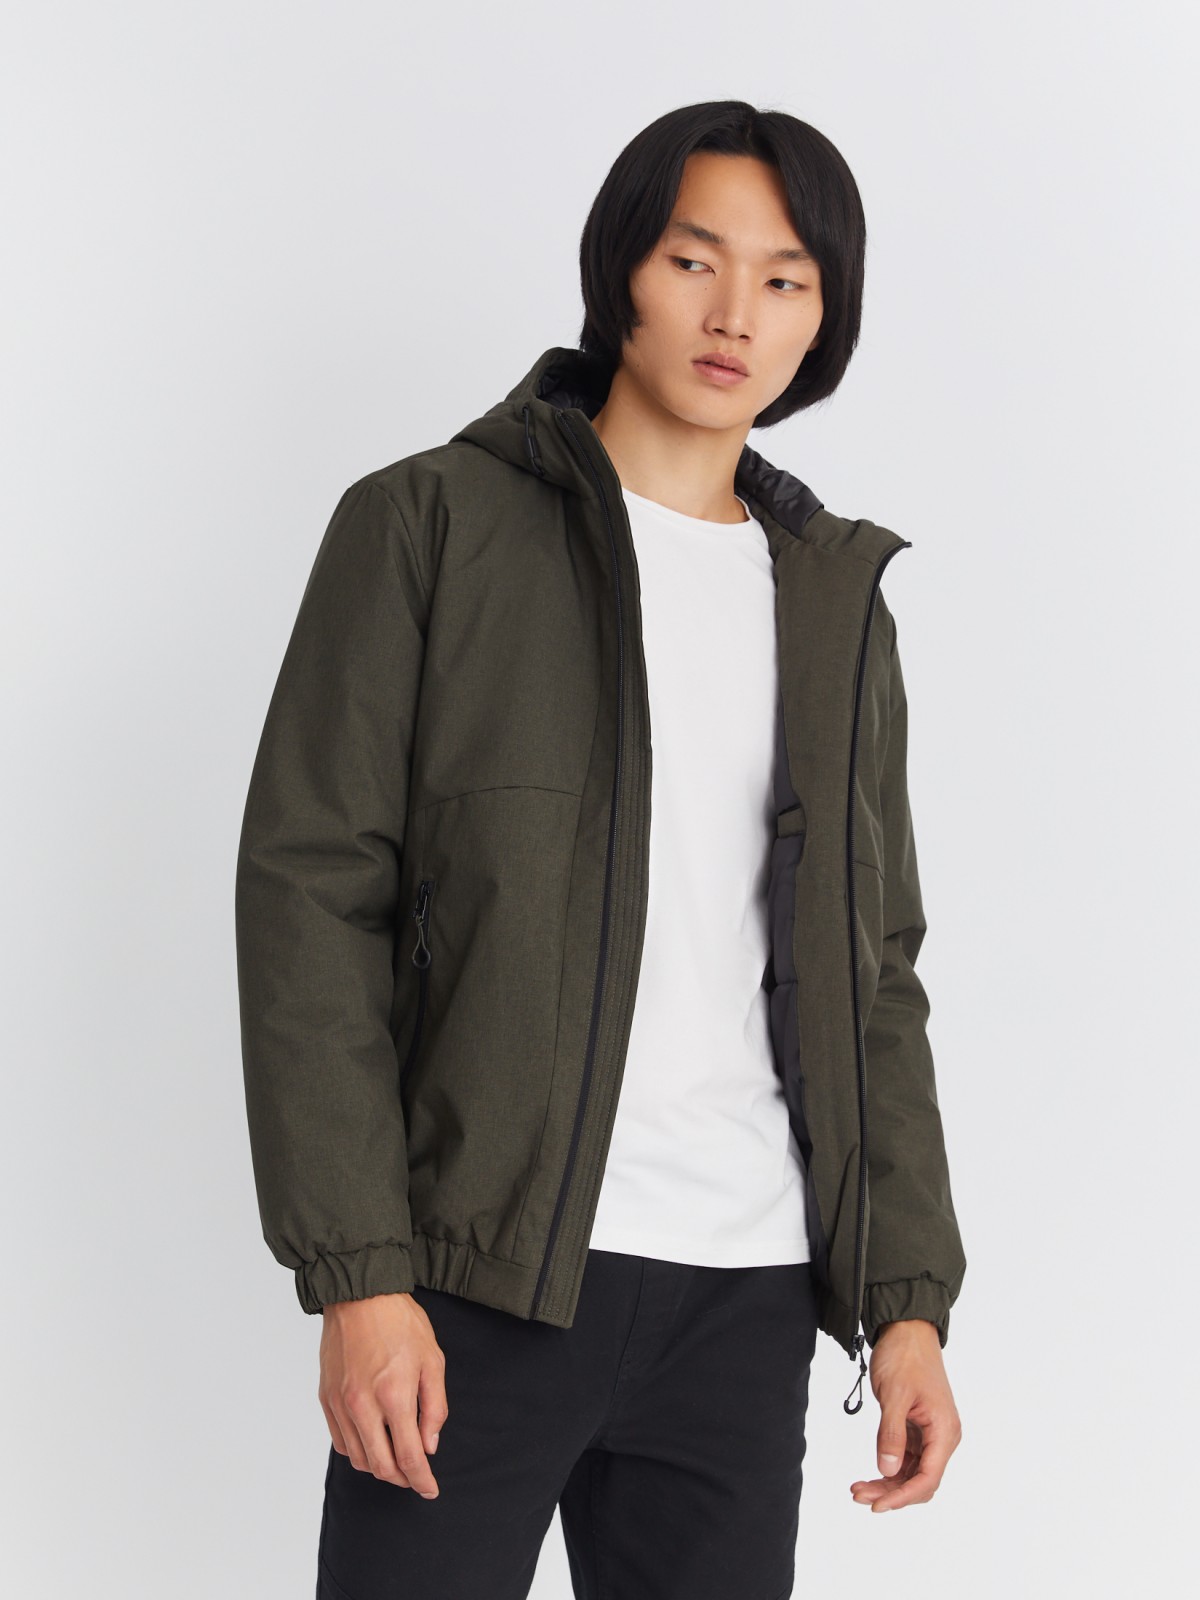 Утеплённая куртка-бомбер на синтепоне с капюшоном zolla 013345102124, цвет хаки, размер S